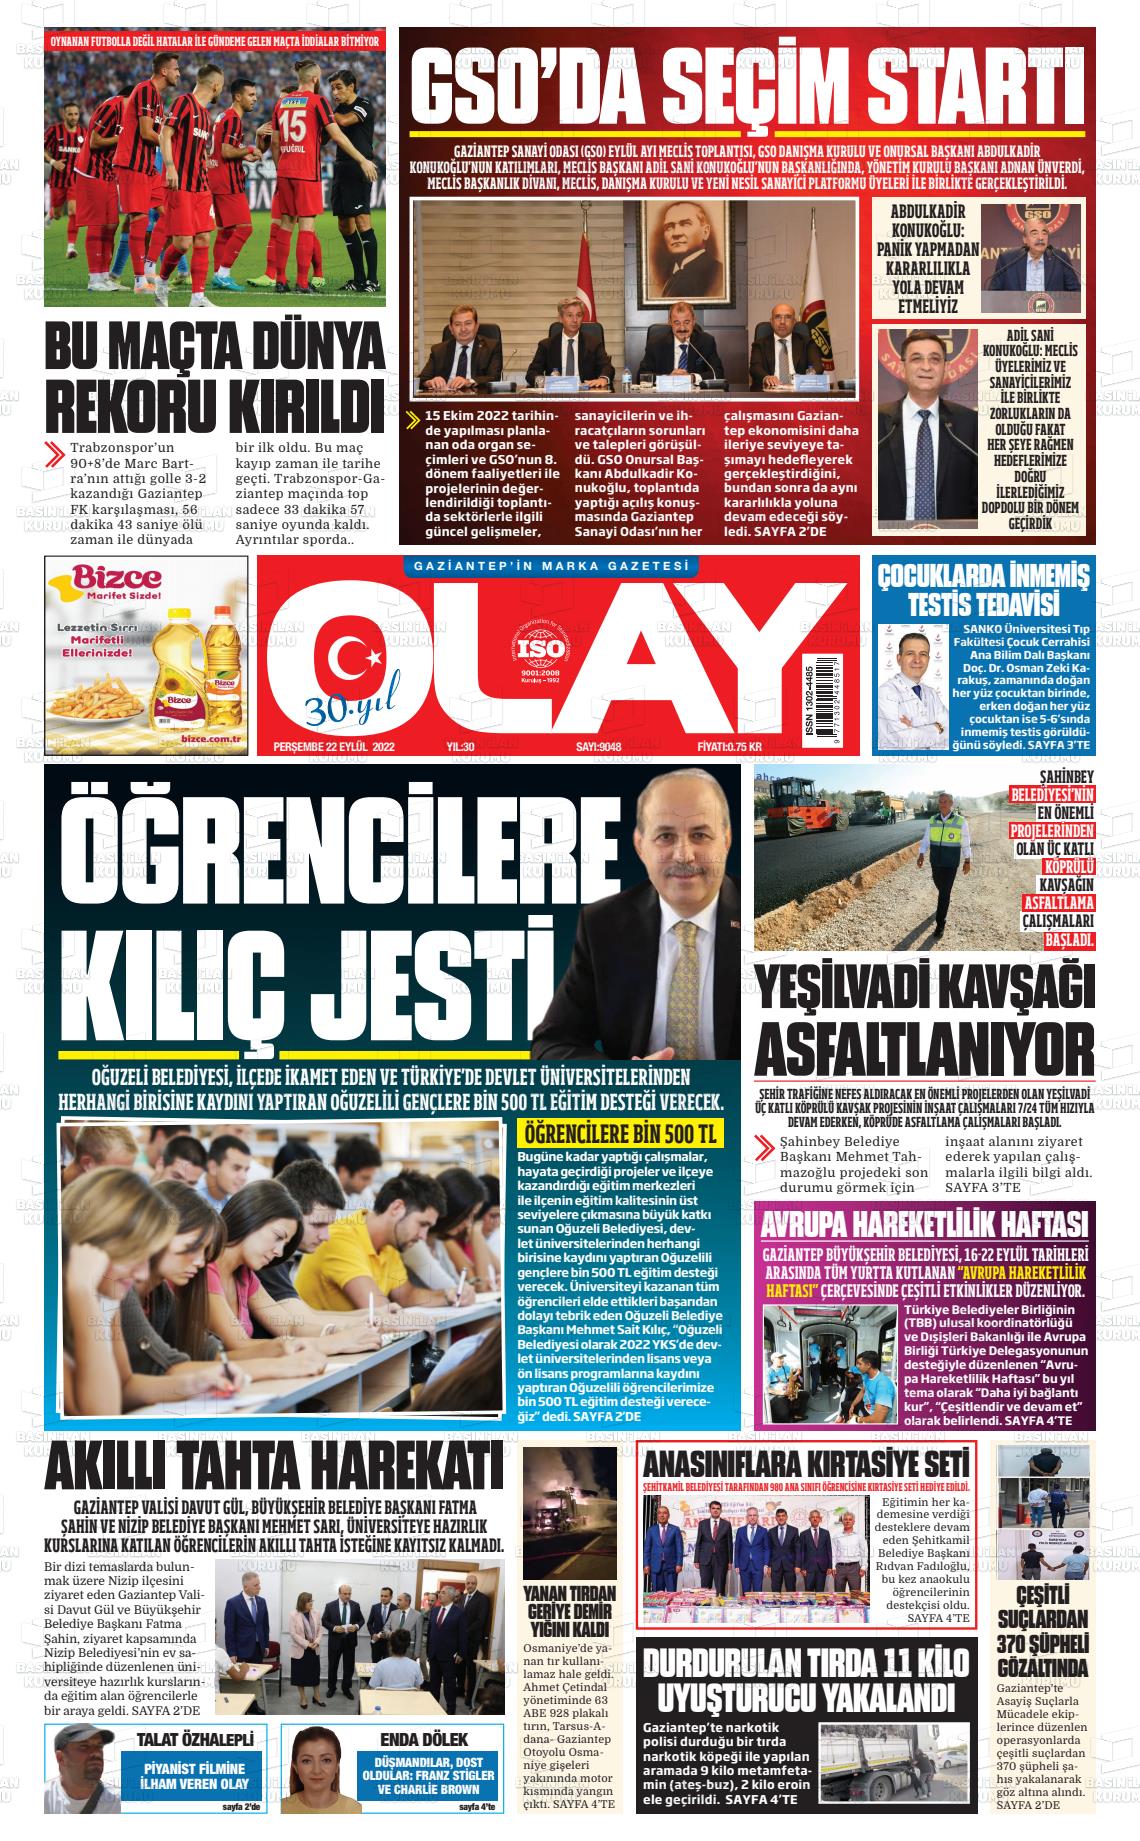 22 Eylül 2022 Olay Medya Gazete Manşeti